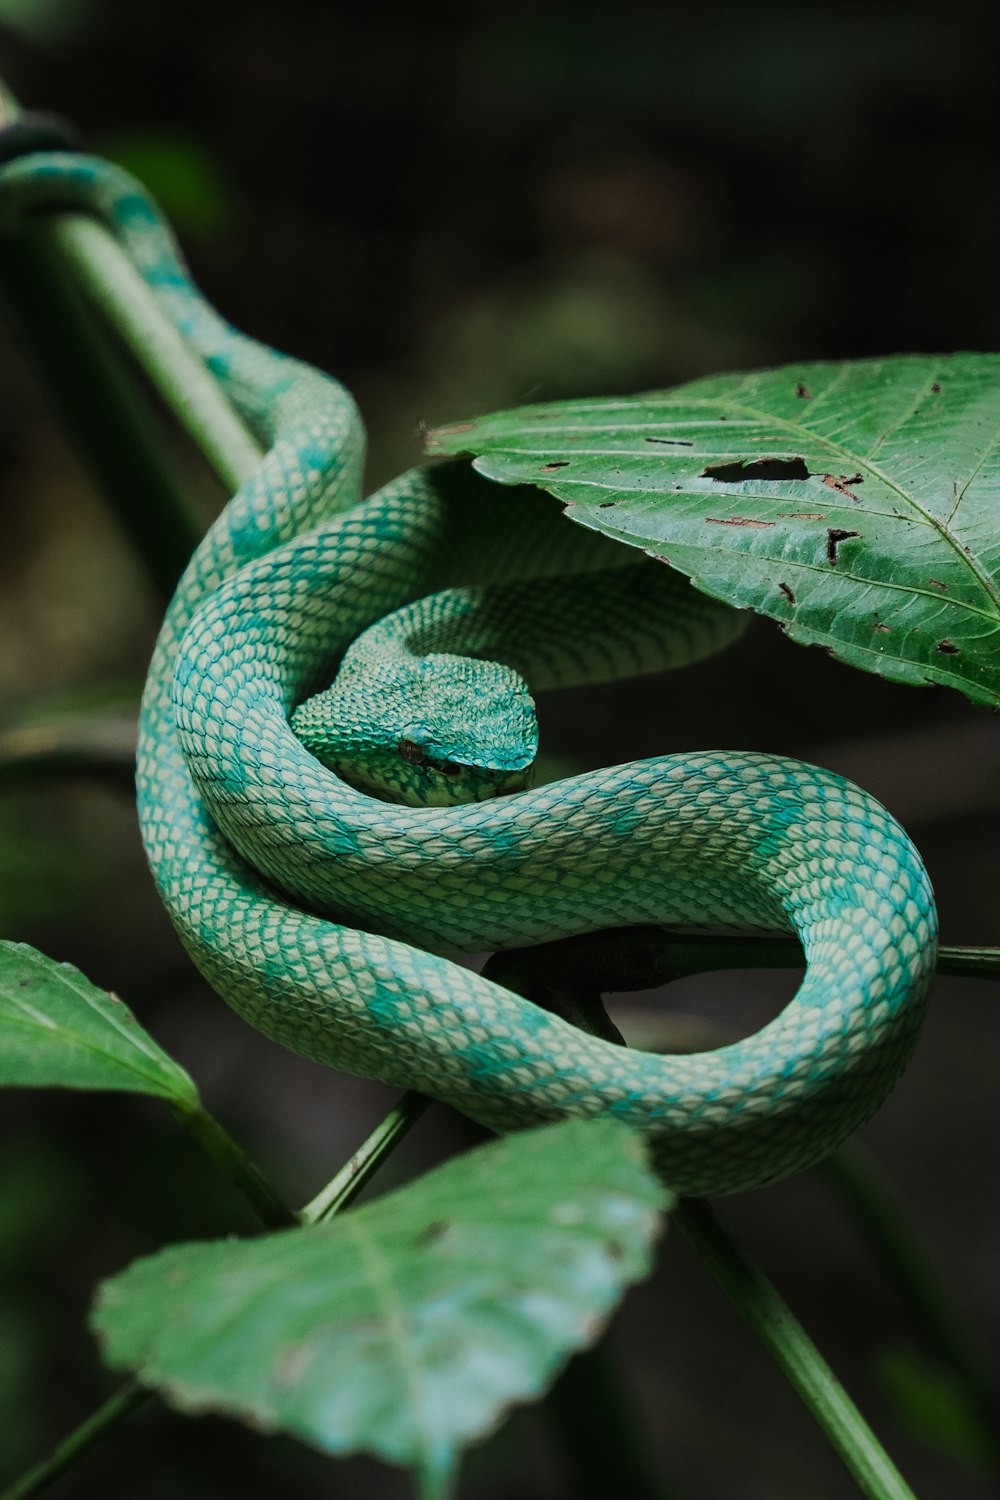 Eine grüne Schlange ist auf einem Blatt zusammengerollt